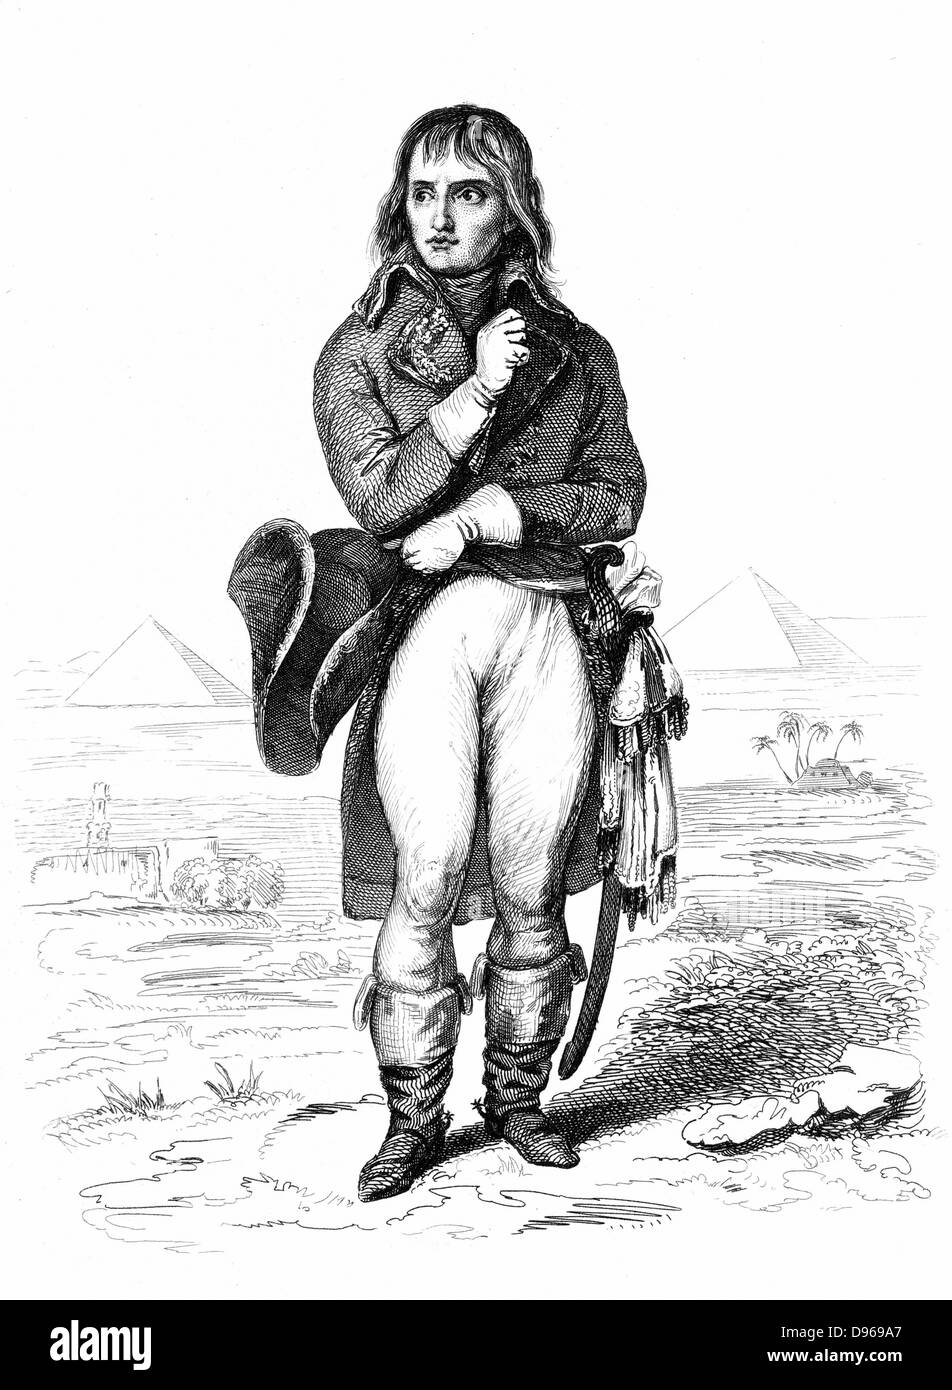 Napoléon (1769-1821) soldat français et l'empereur comme le général Bonaparte lors de sa campagne d'Égypte 1798-1799. La gravure. Banque D'Images